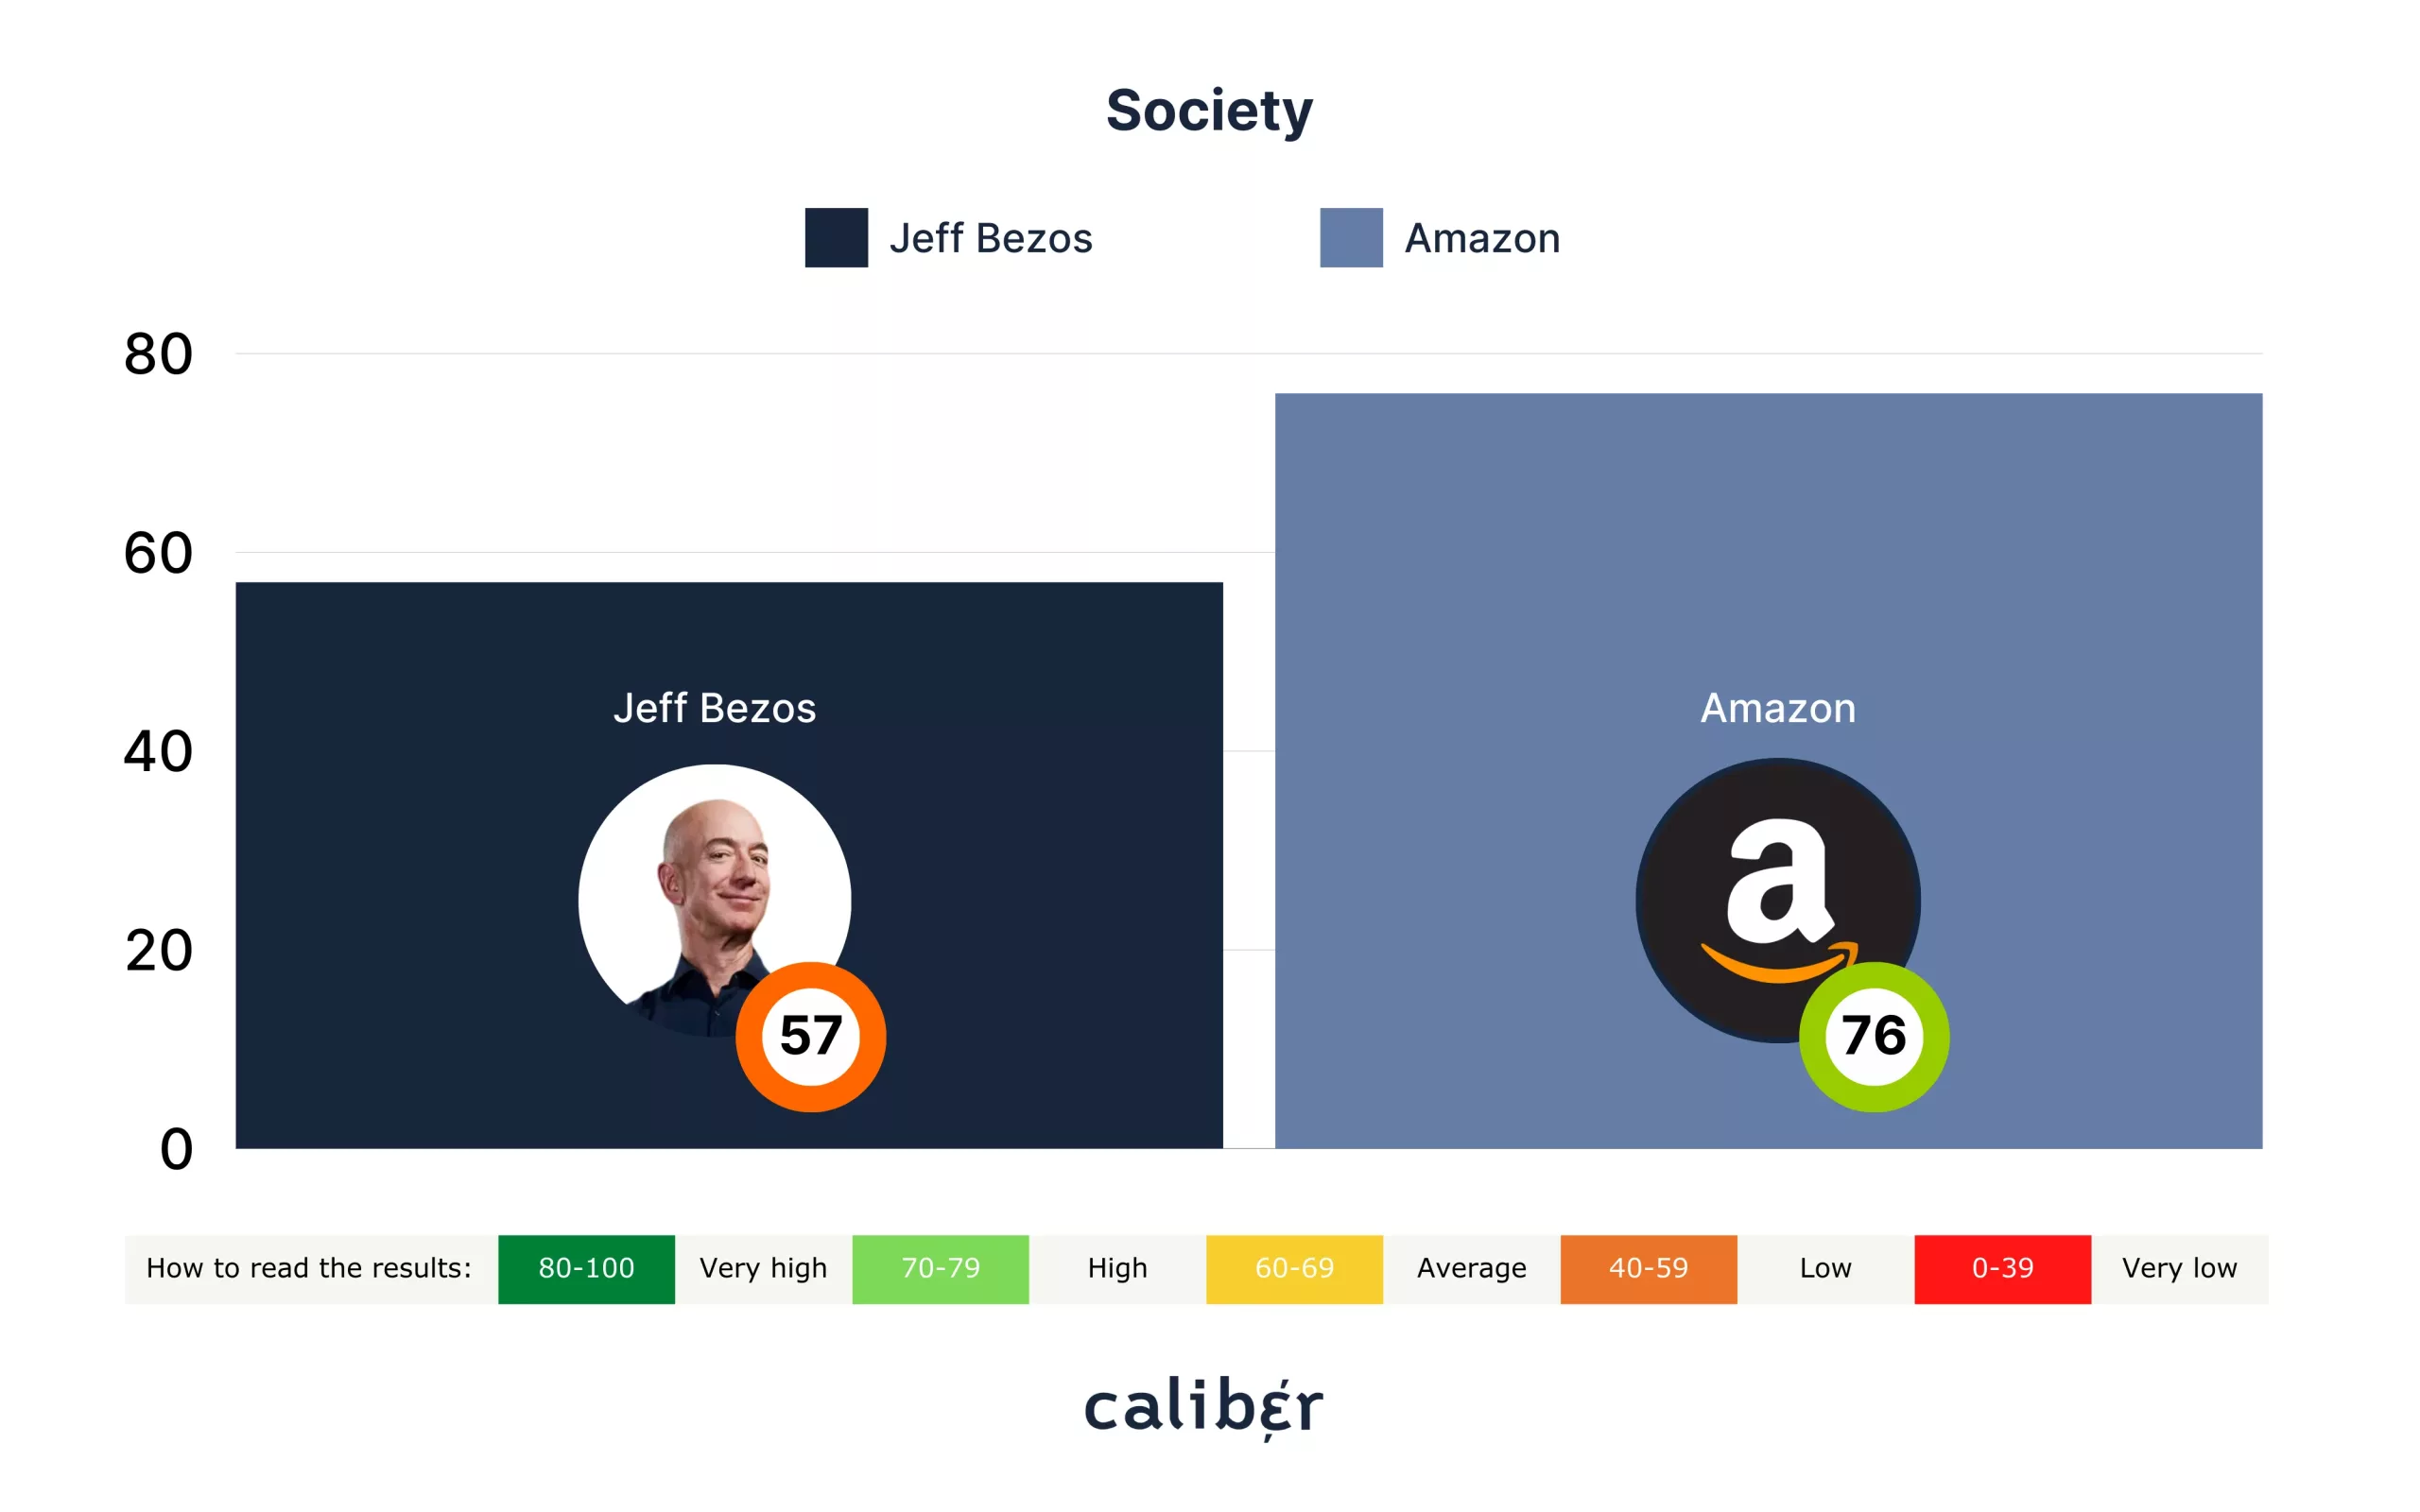 Jeff Bezos Society Score